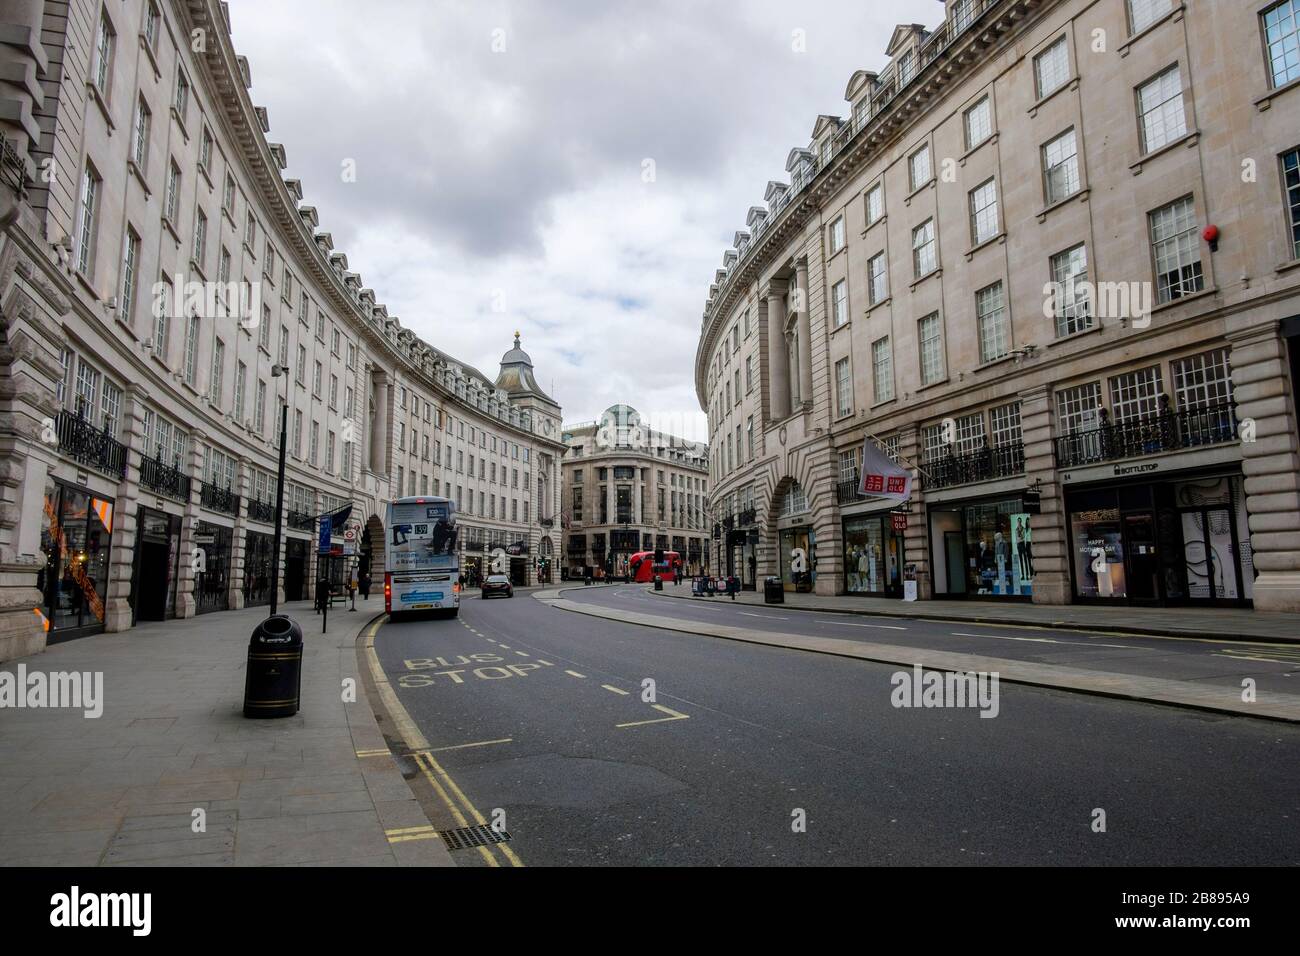 Londra, Regno Unito. 20 marzo 2020. Regent Street, normalmente una delle zone più popolari del West End per gli amanti dello shopping, è praticamente deserta, poiché la gente si allontana dal centro di Londra. Foto Stock